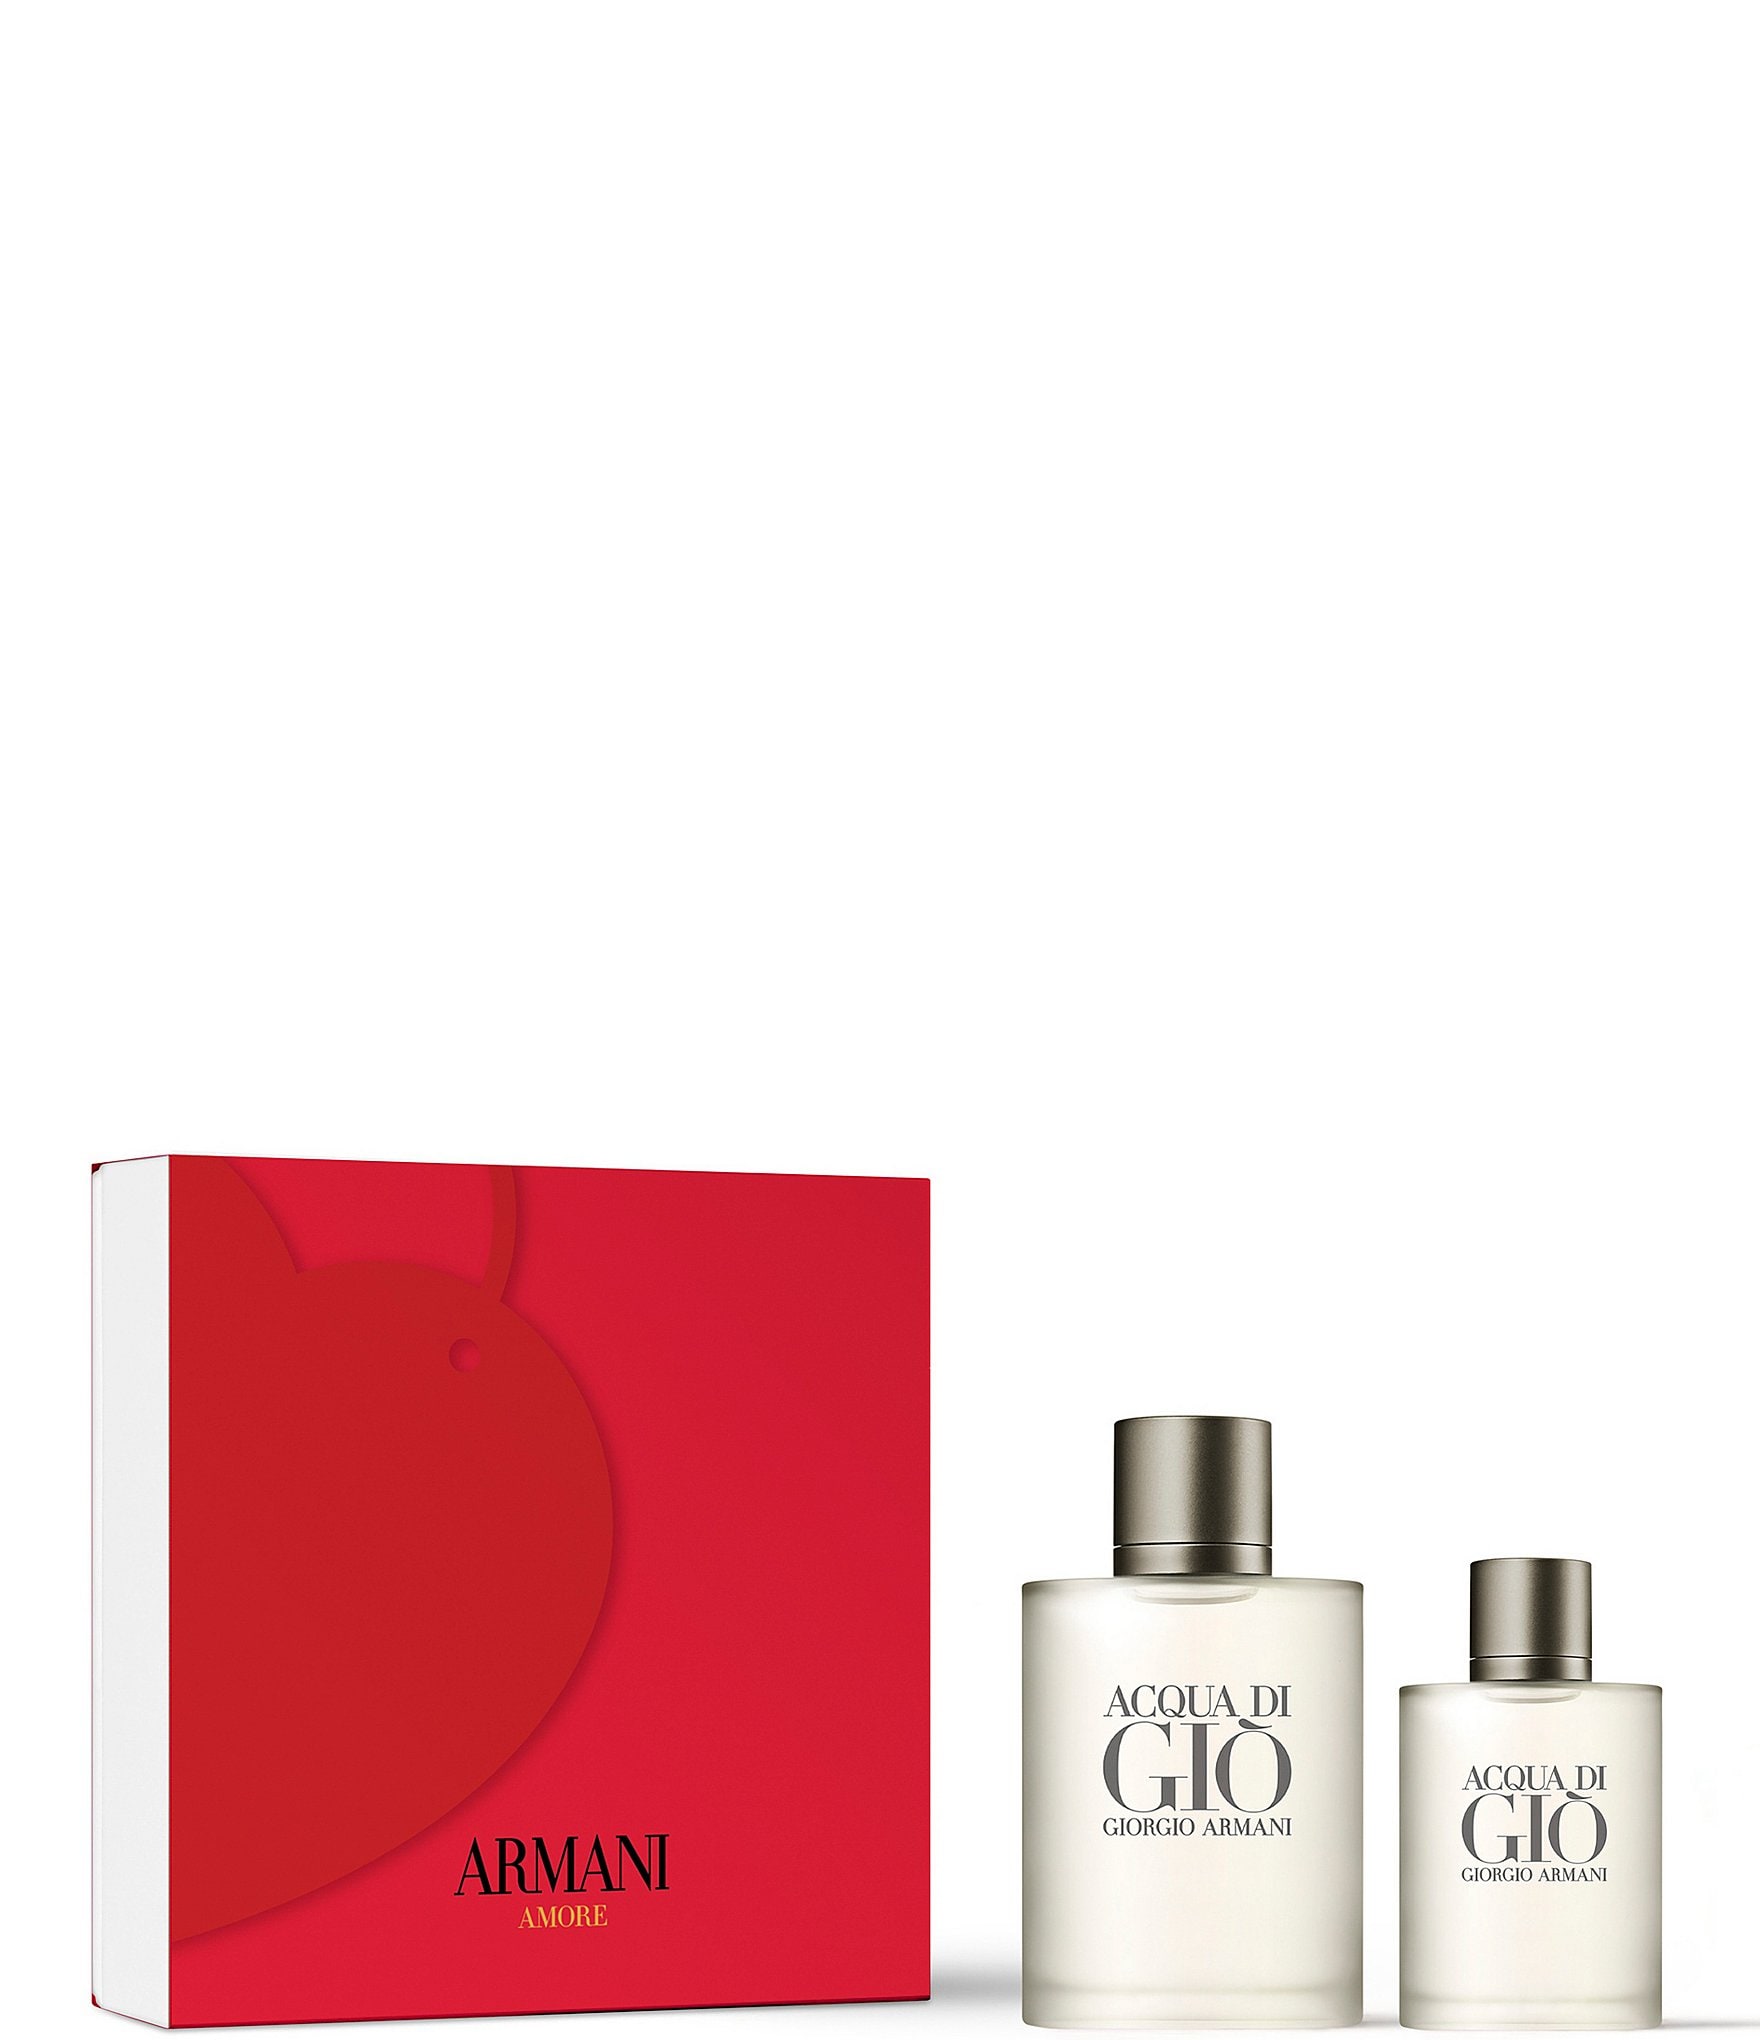 Giorgio Armani Men's Cologne & Fragrance | Dillard's